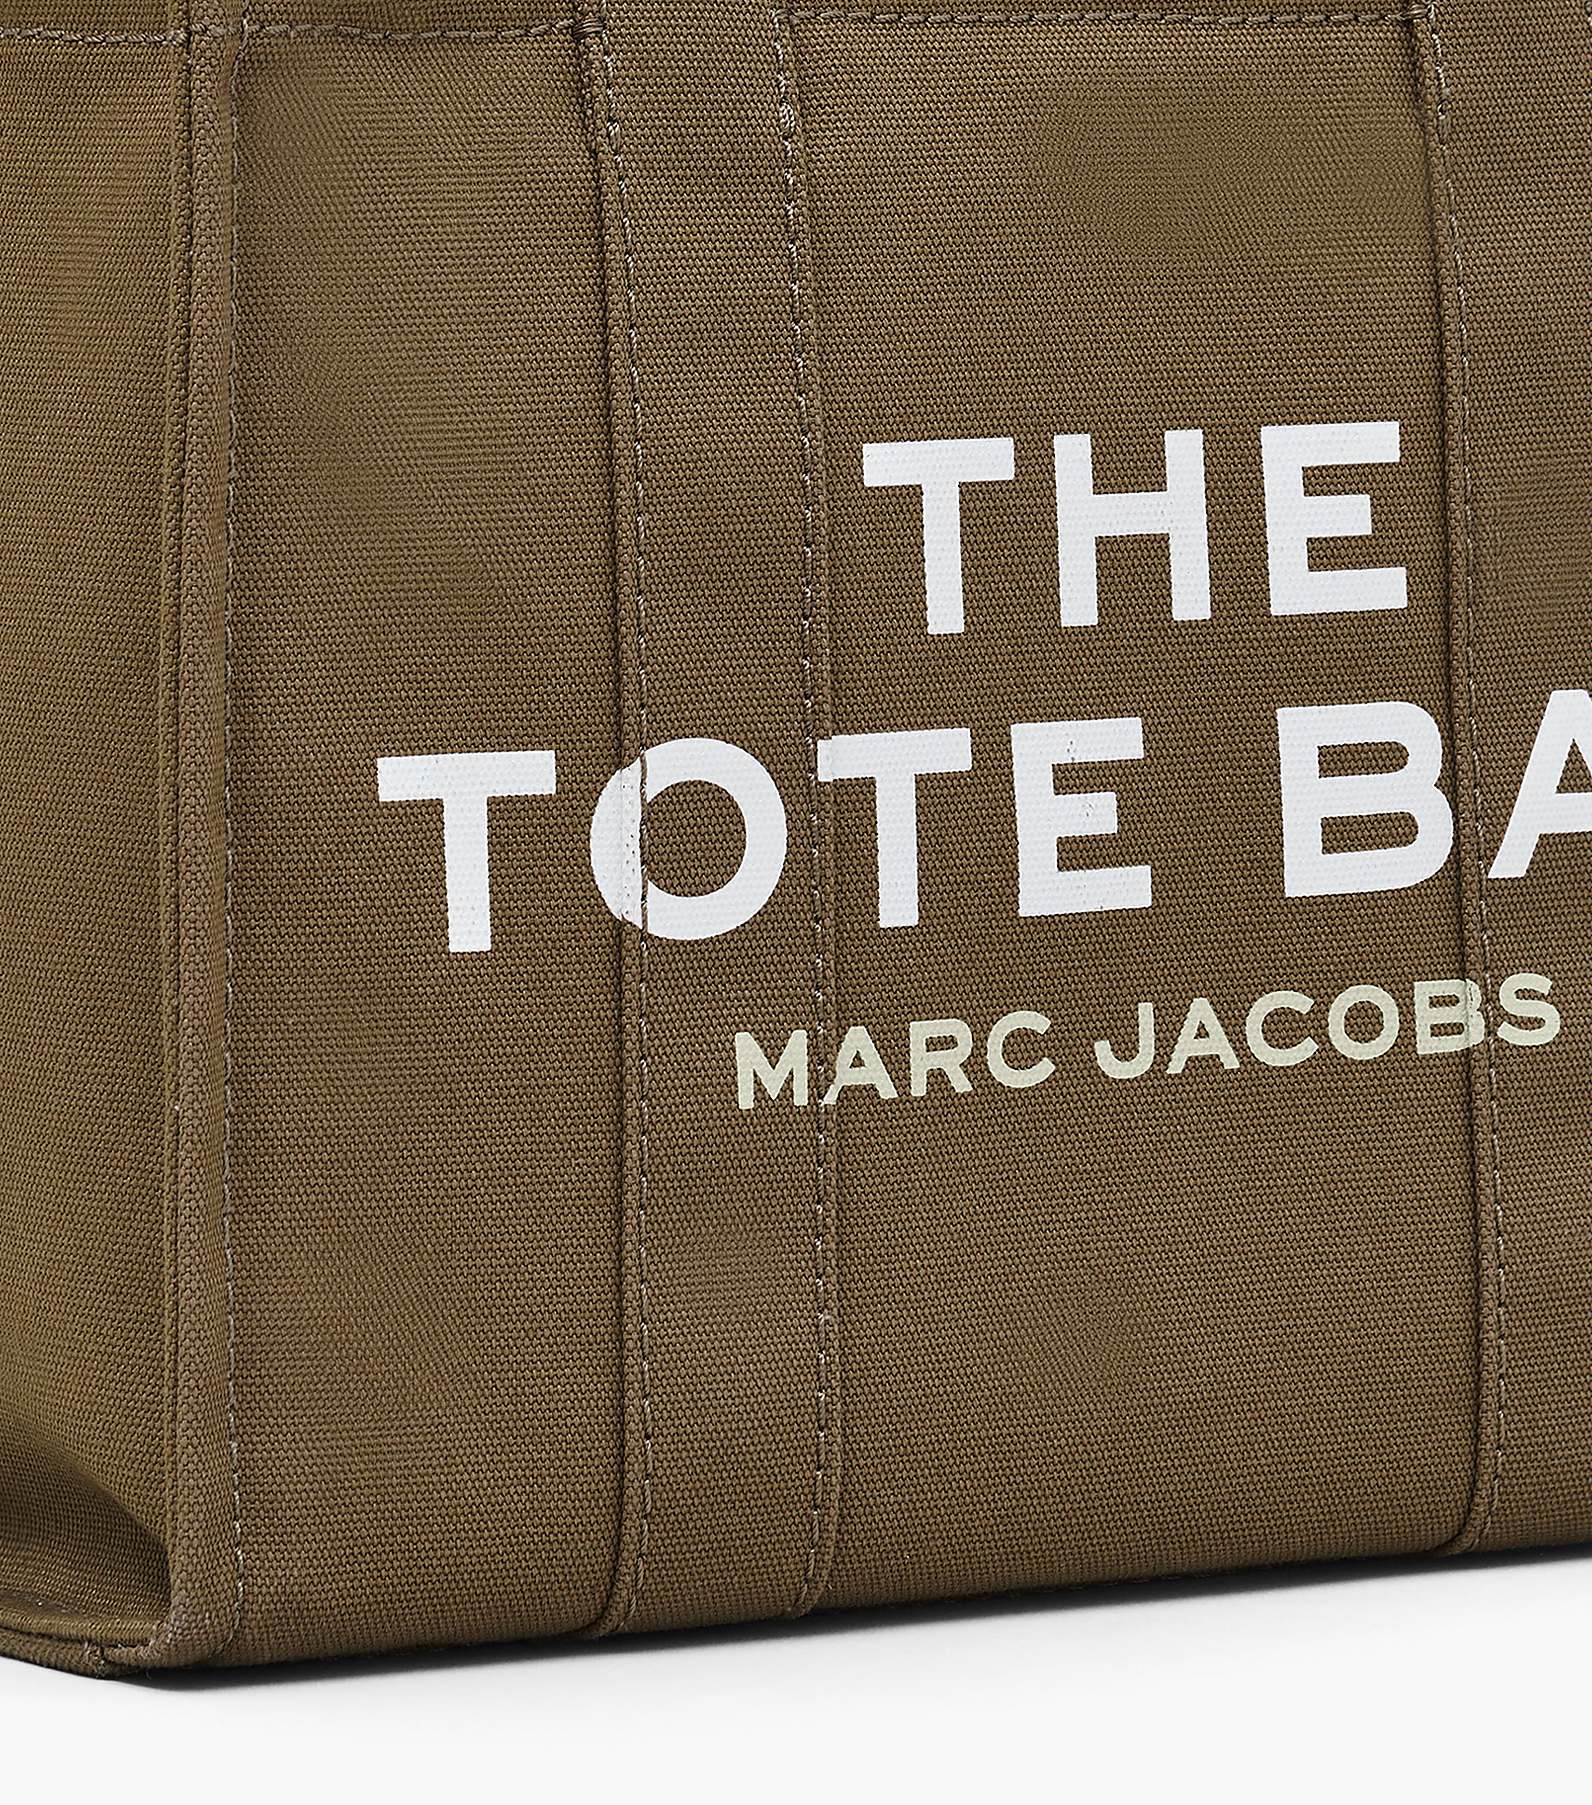 The Medium Tote Bag(The Tote Bag)